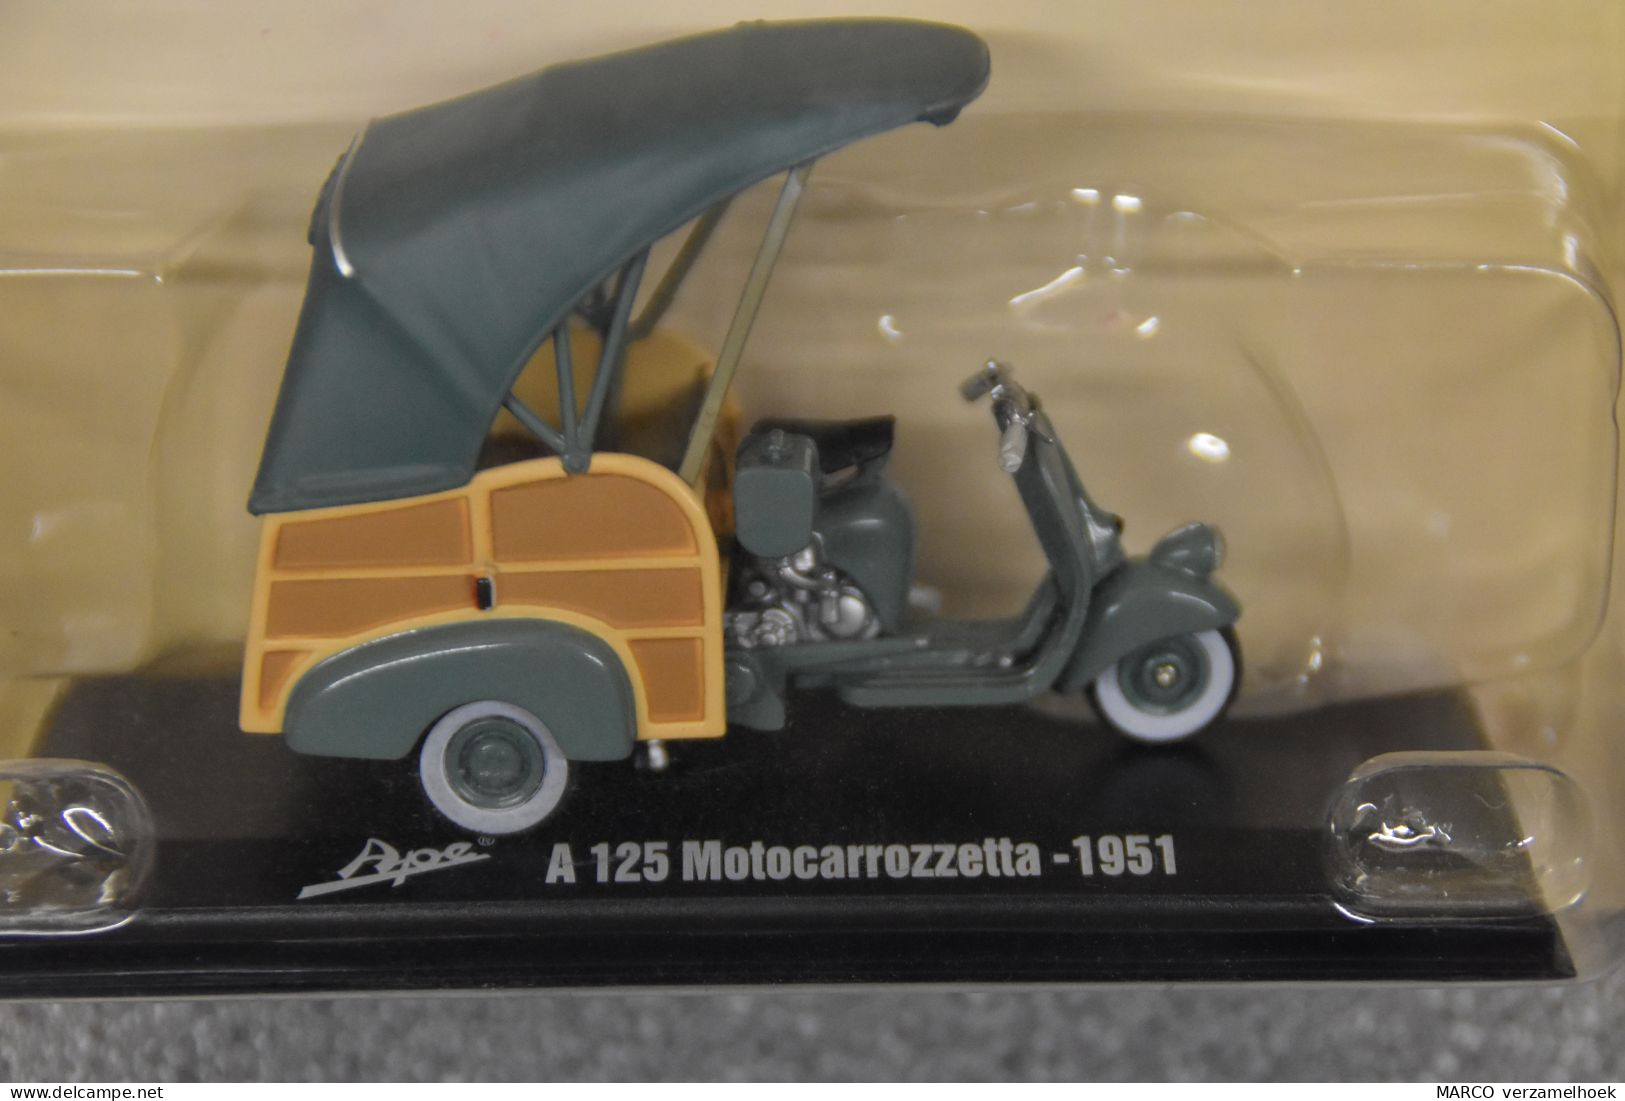 Vespa Ape A125 Motocarrozetta 1951 Hachette Fascicoli Srl. Milano Italy (I) Scale 1:32 - Scale 1:32